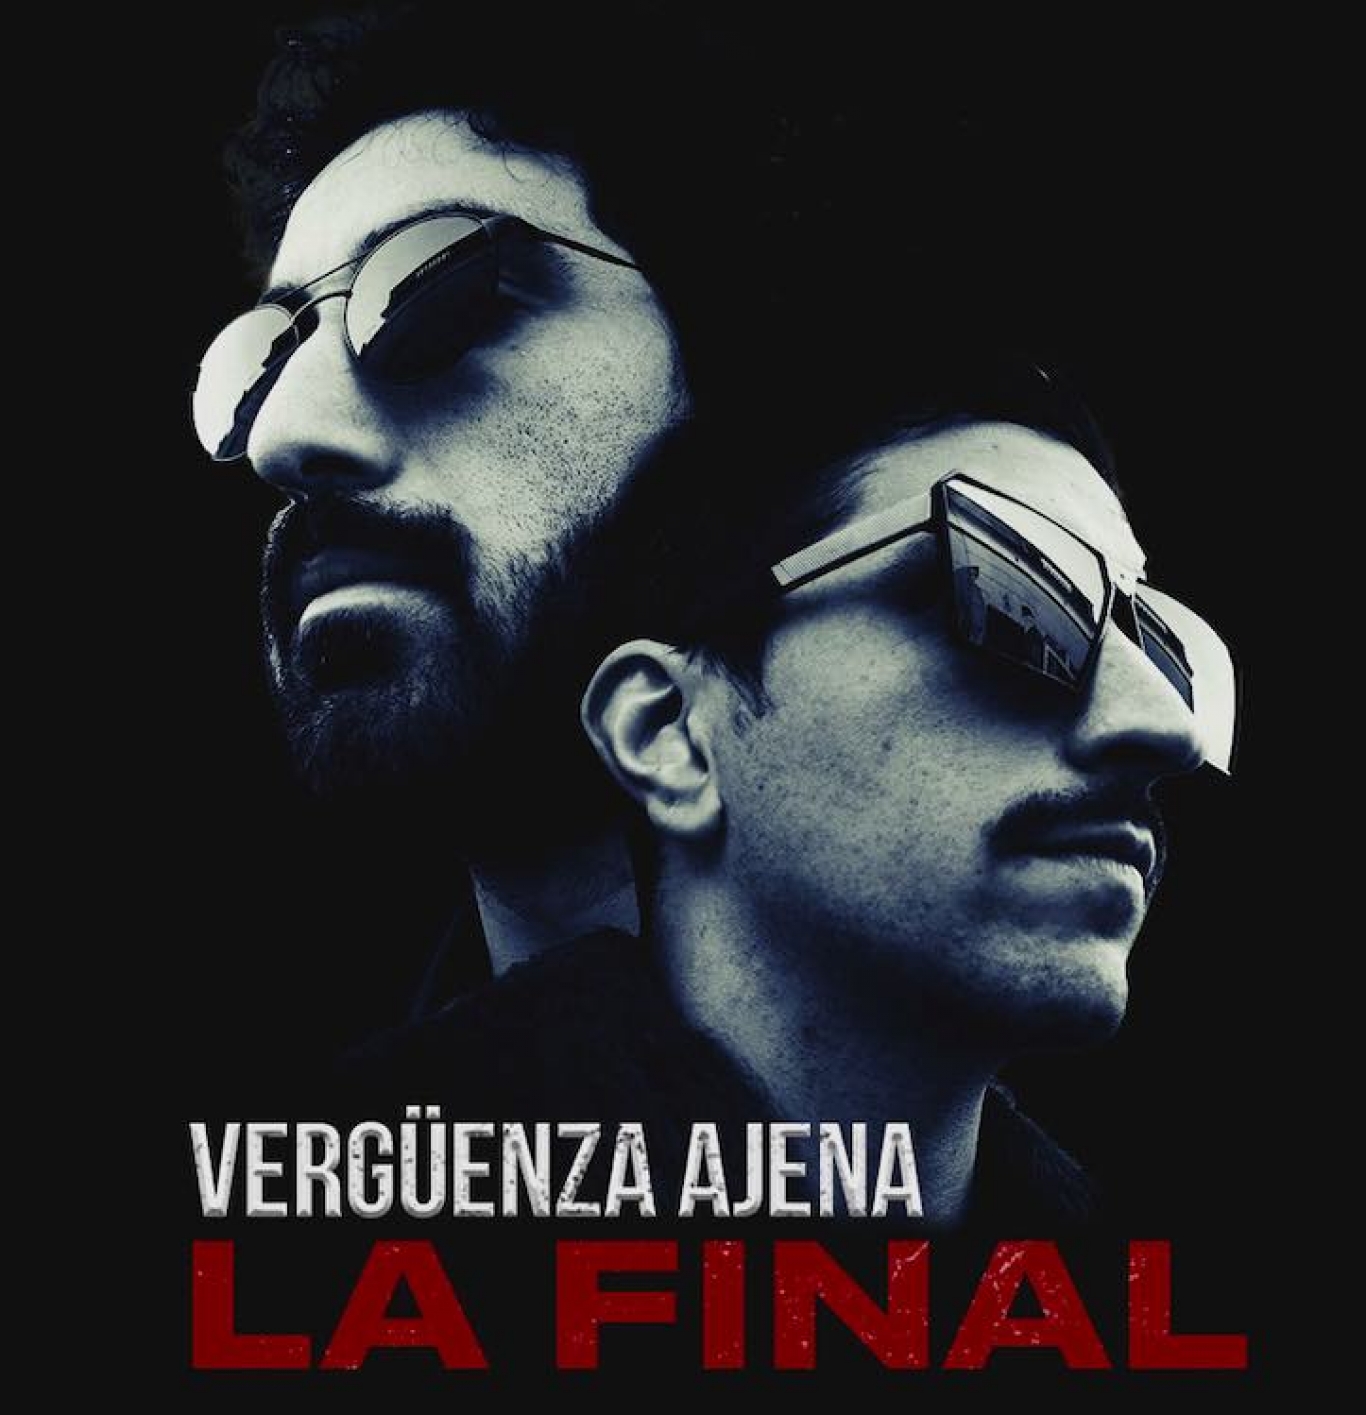 El Duo "Vergüenza Ajena" llego a su final....